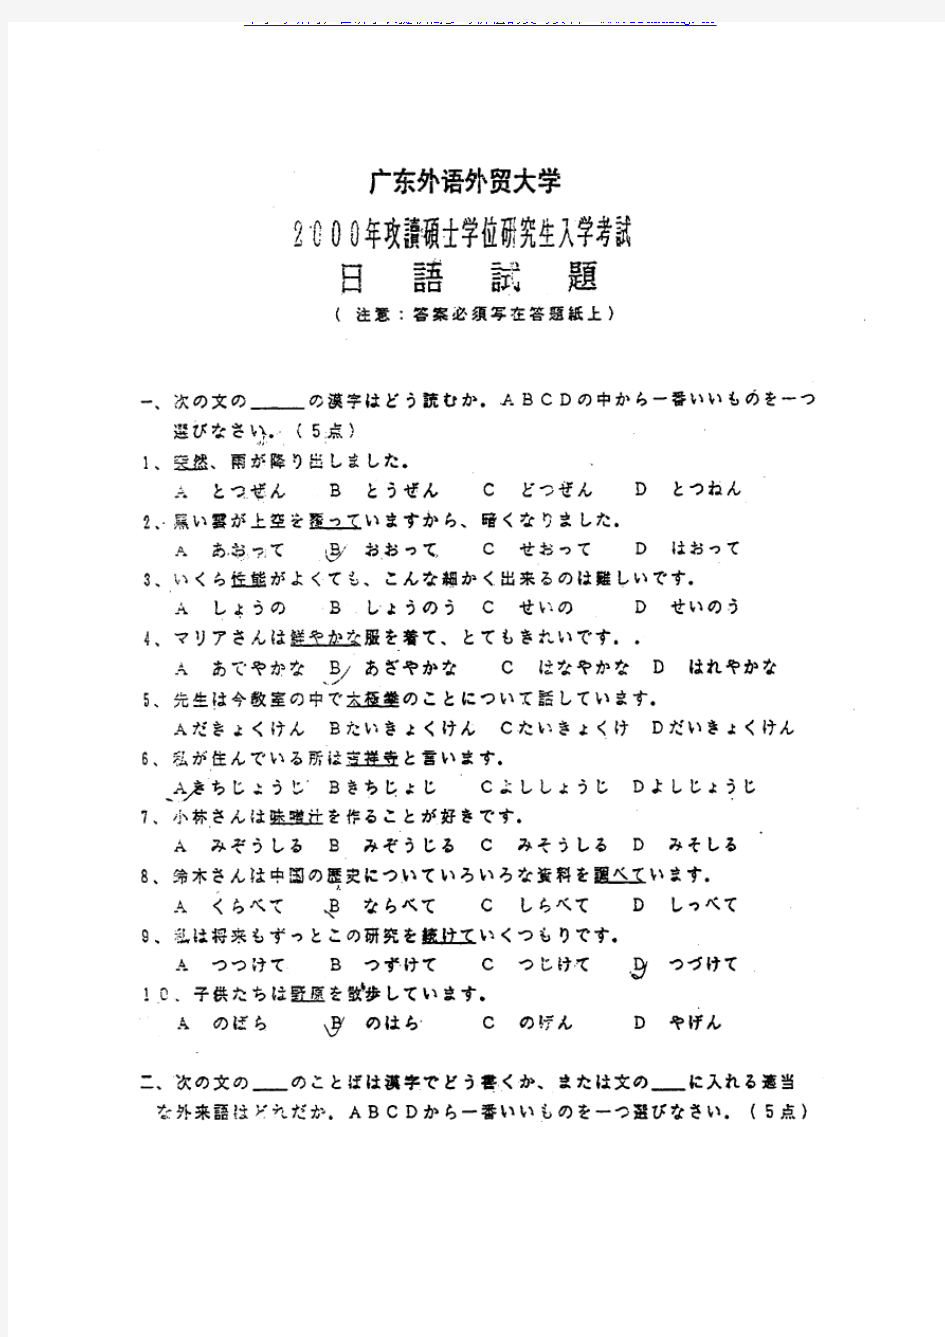 广东外语外贸大学 广外 2000年日语(二外)考研真题及答案解析